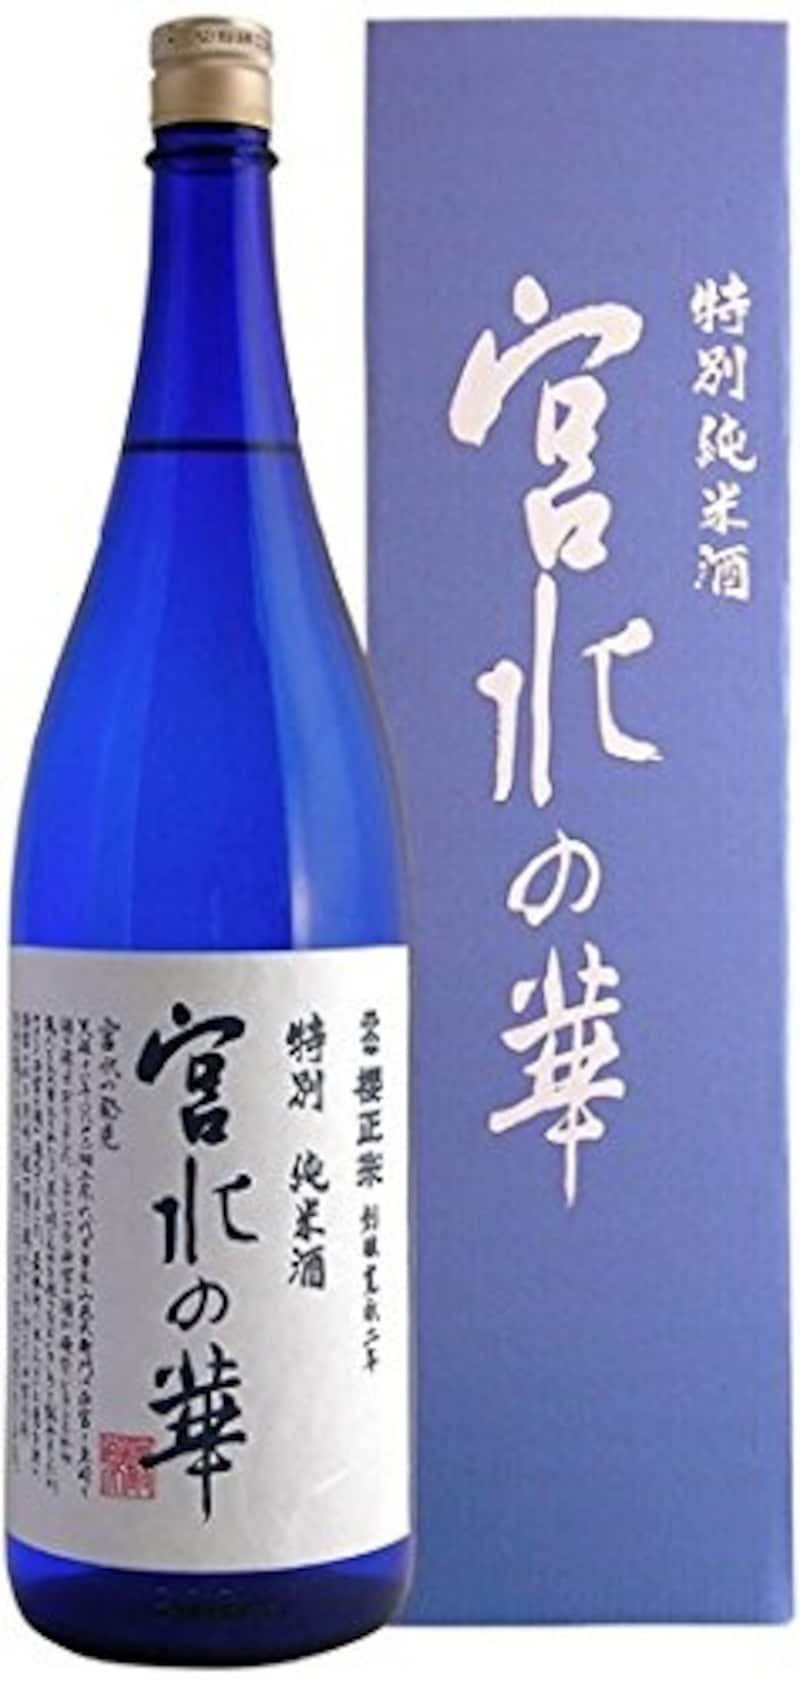 櫻正宗,宮水の華 特別純米酒 瓶 1800ml